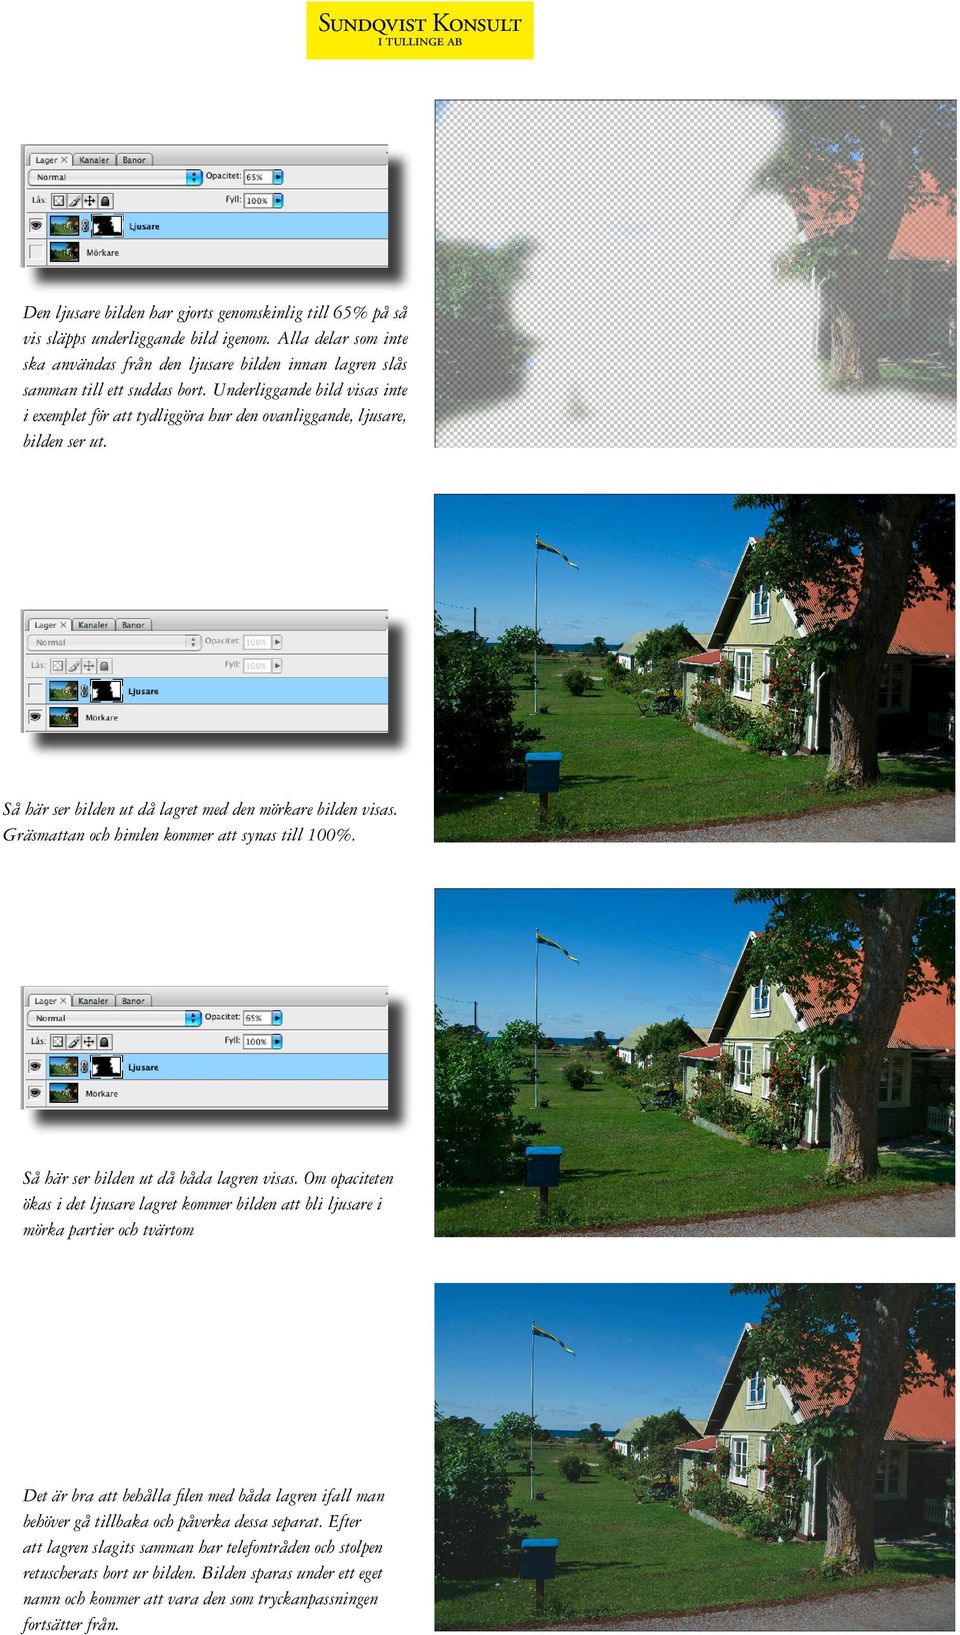 Underliggande bild visas inte i exemplet för att tydliggöra hur den ovanliggande, ljusare, bilden ser ut. Så här ser bilden ut då lagret med den mörkare bilden visas.